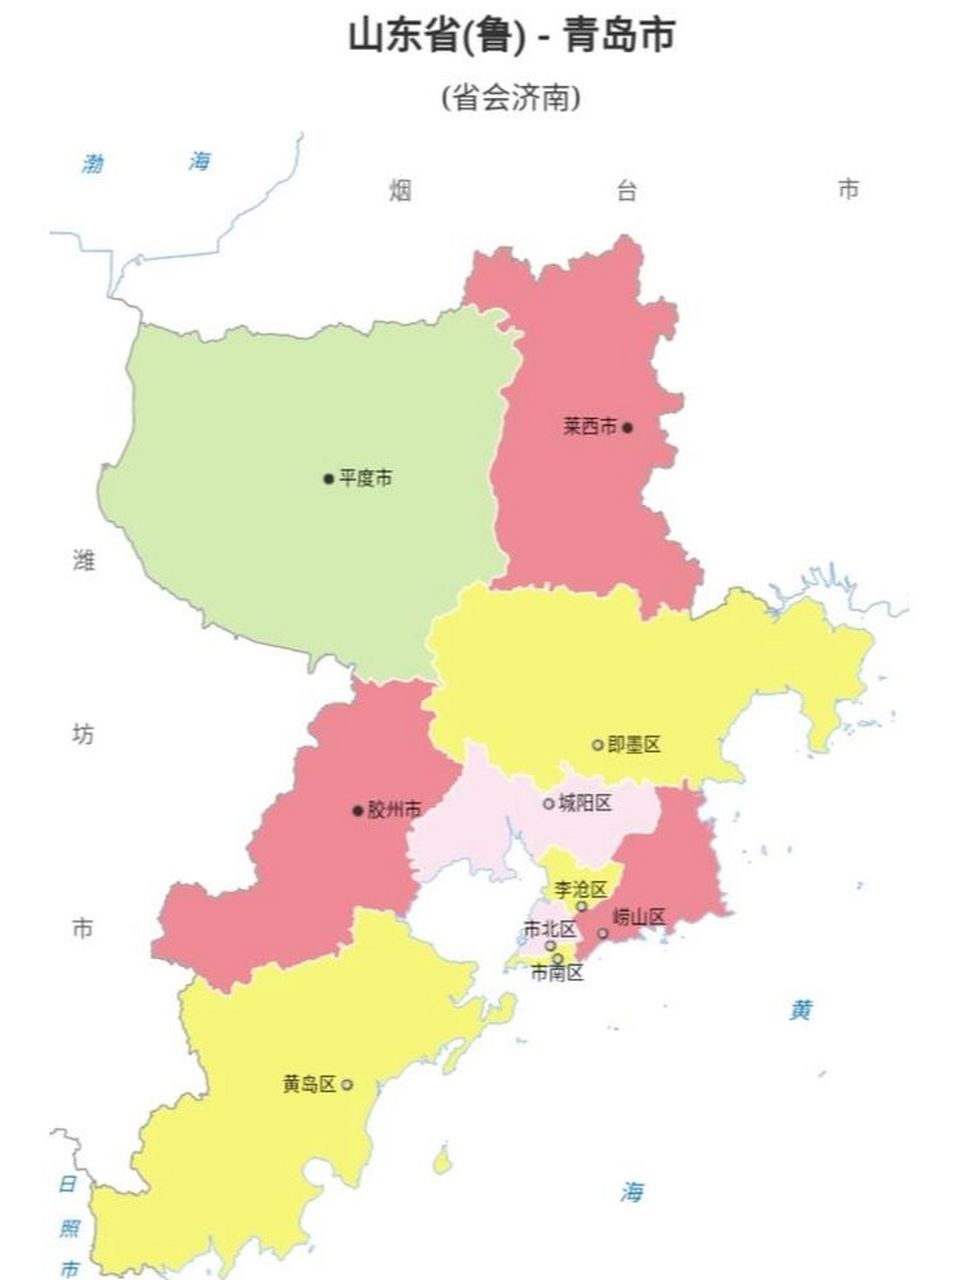 青岛行政地图 青岛的最北边是莱西,最南边是胶南(现属于黄岛)最东边是